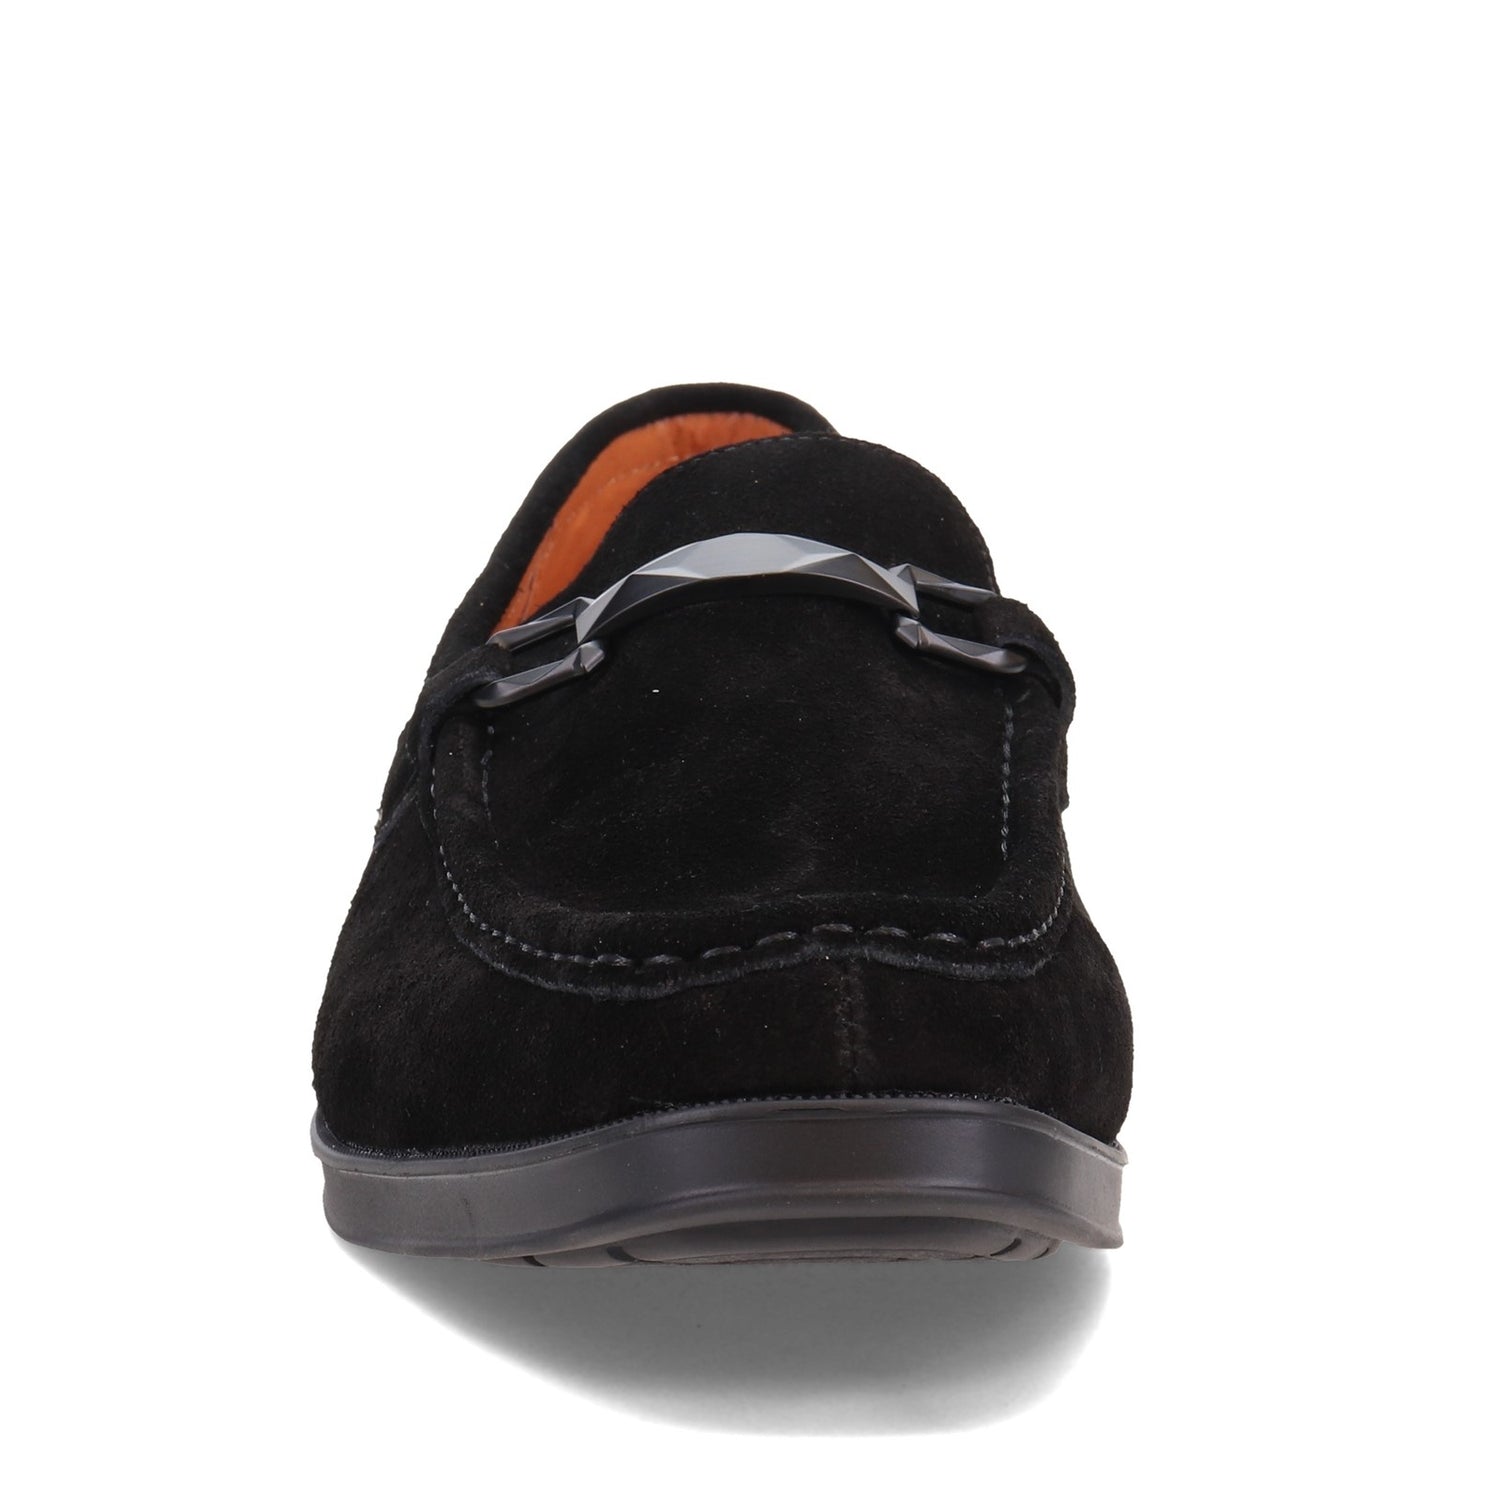 Peltz Shoes  Men's Stacy Adams Paragon Loafer BLACK SUEDE 25485-008